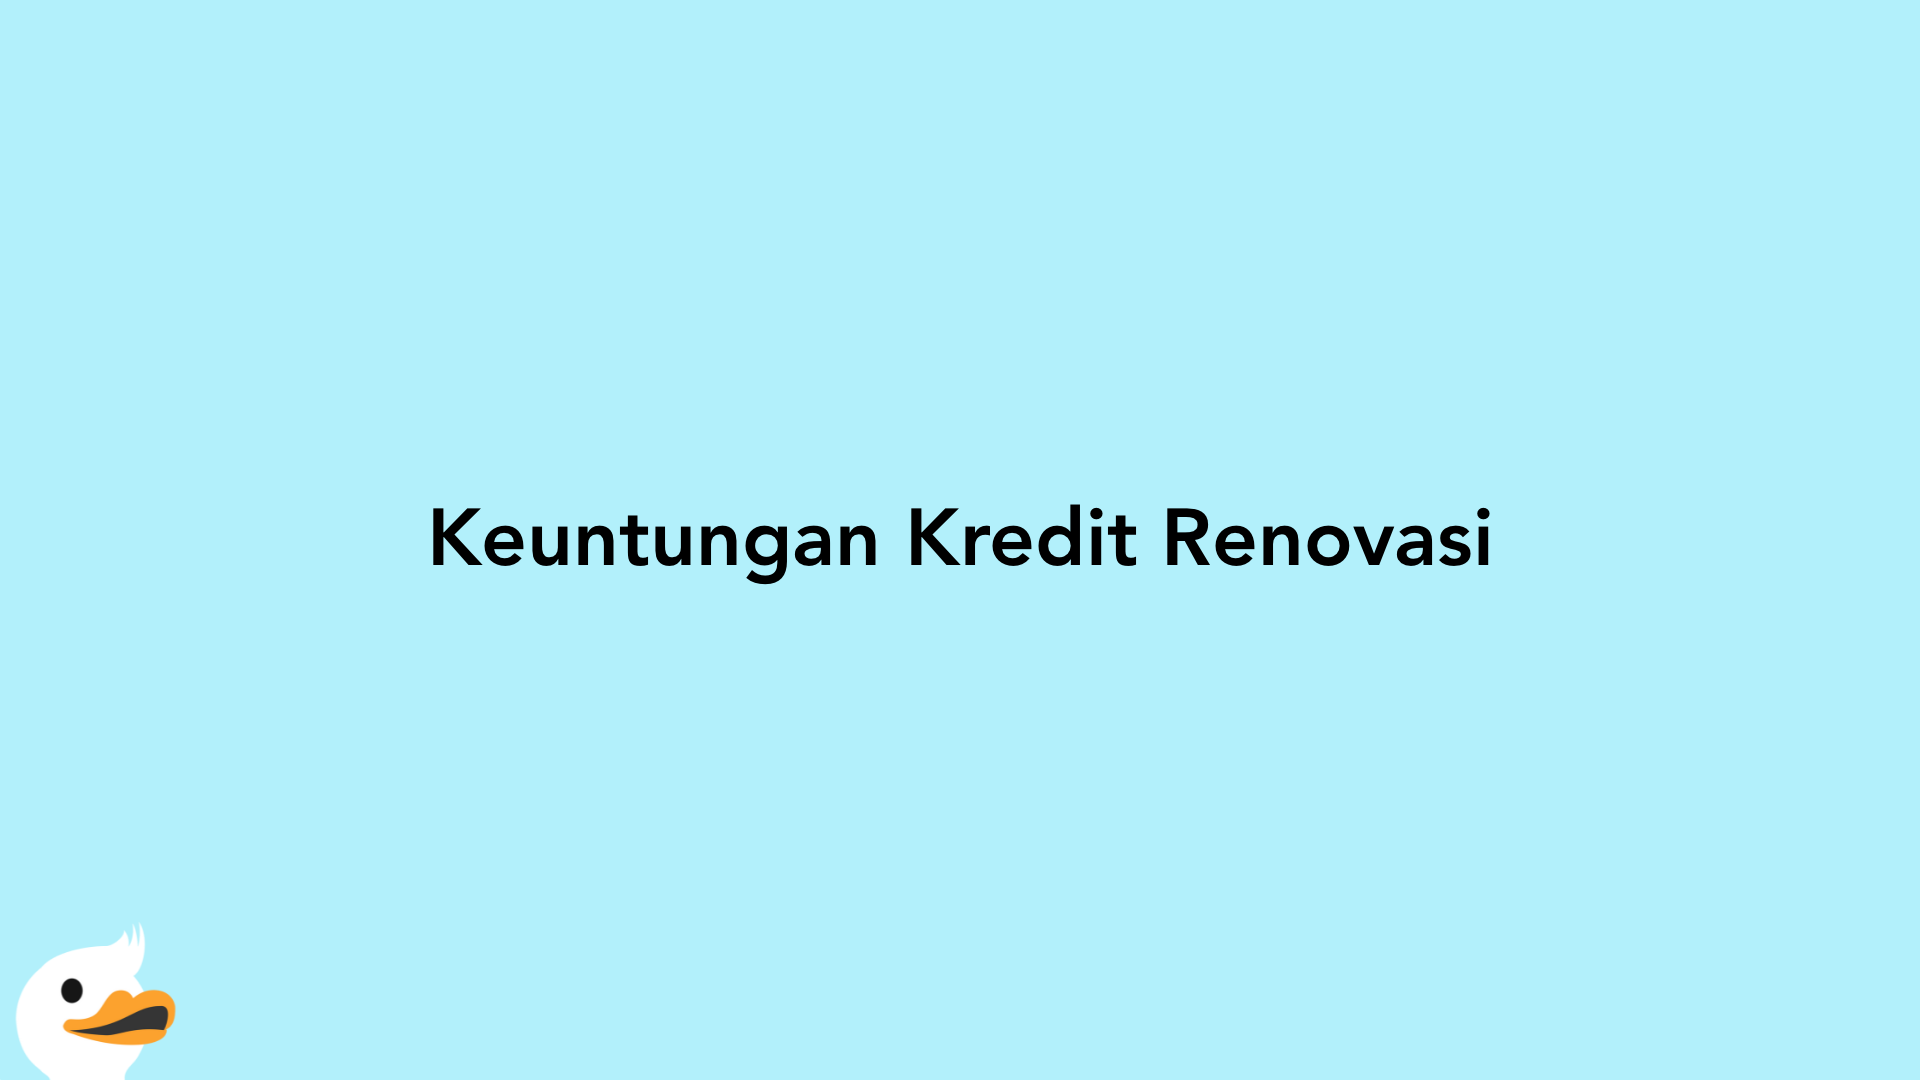 Keuntungan Kredit Renovasi